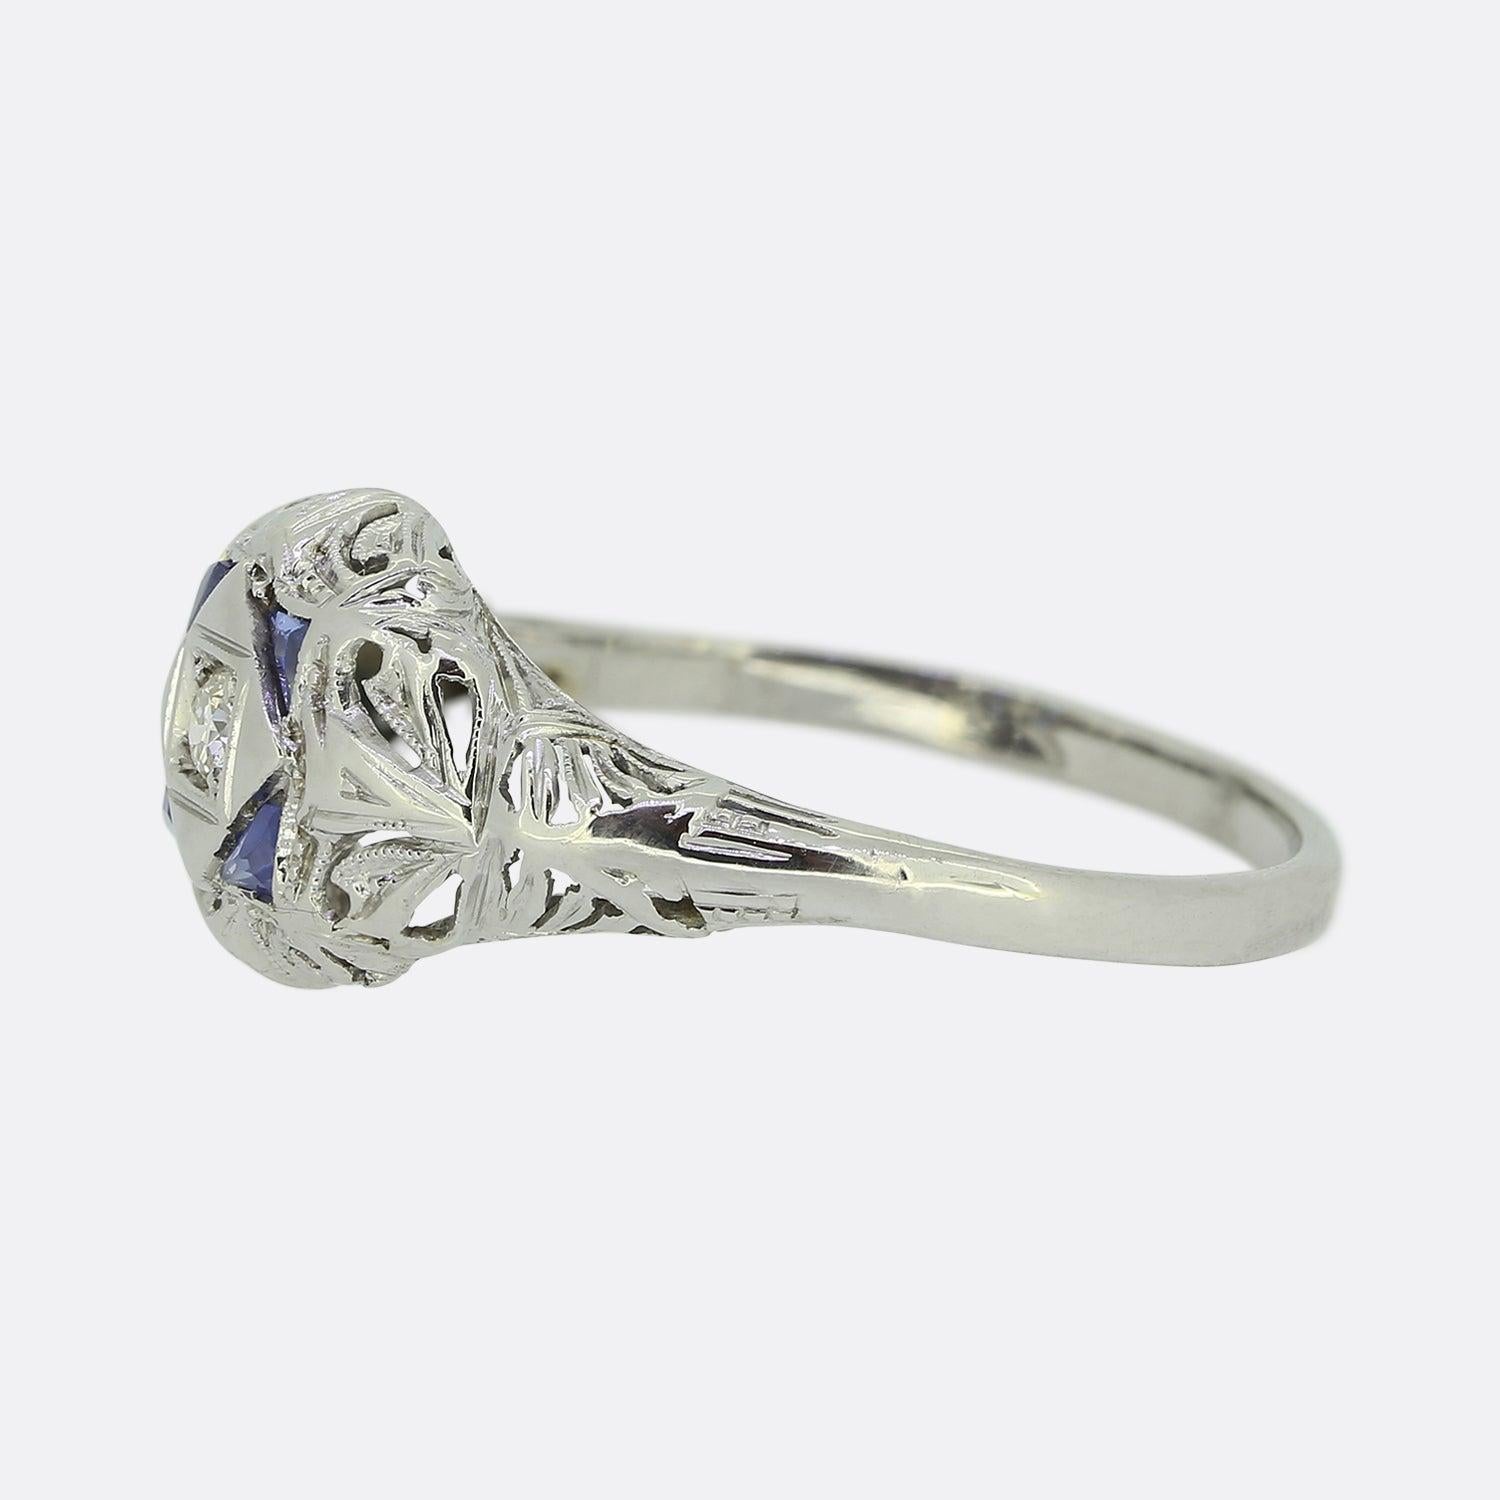 Dies ist ein reizvoller Art-Deco-Ring mit Saphir und Diamant. Das aus 18-karätigem Weißgold gefertigte Schmuckstück weist viele der typischen Merkmale dieses Stils auf, darunter die sorgfältig handgefertigten offenen Durchbrüche und die eleganten